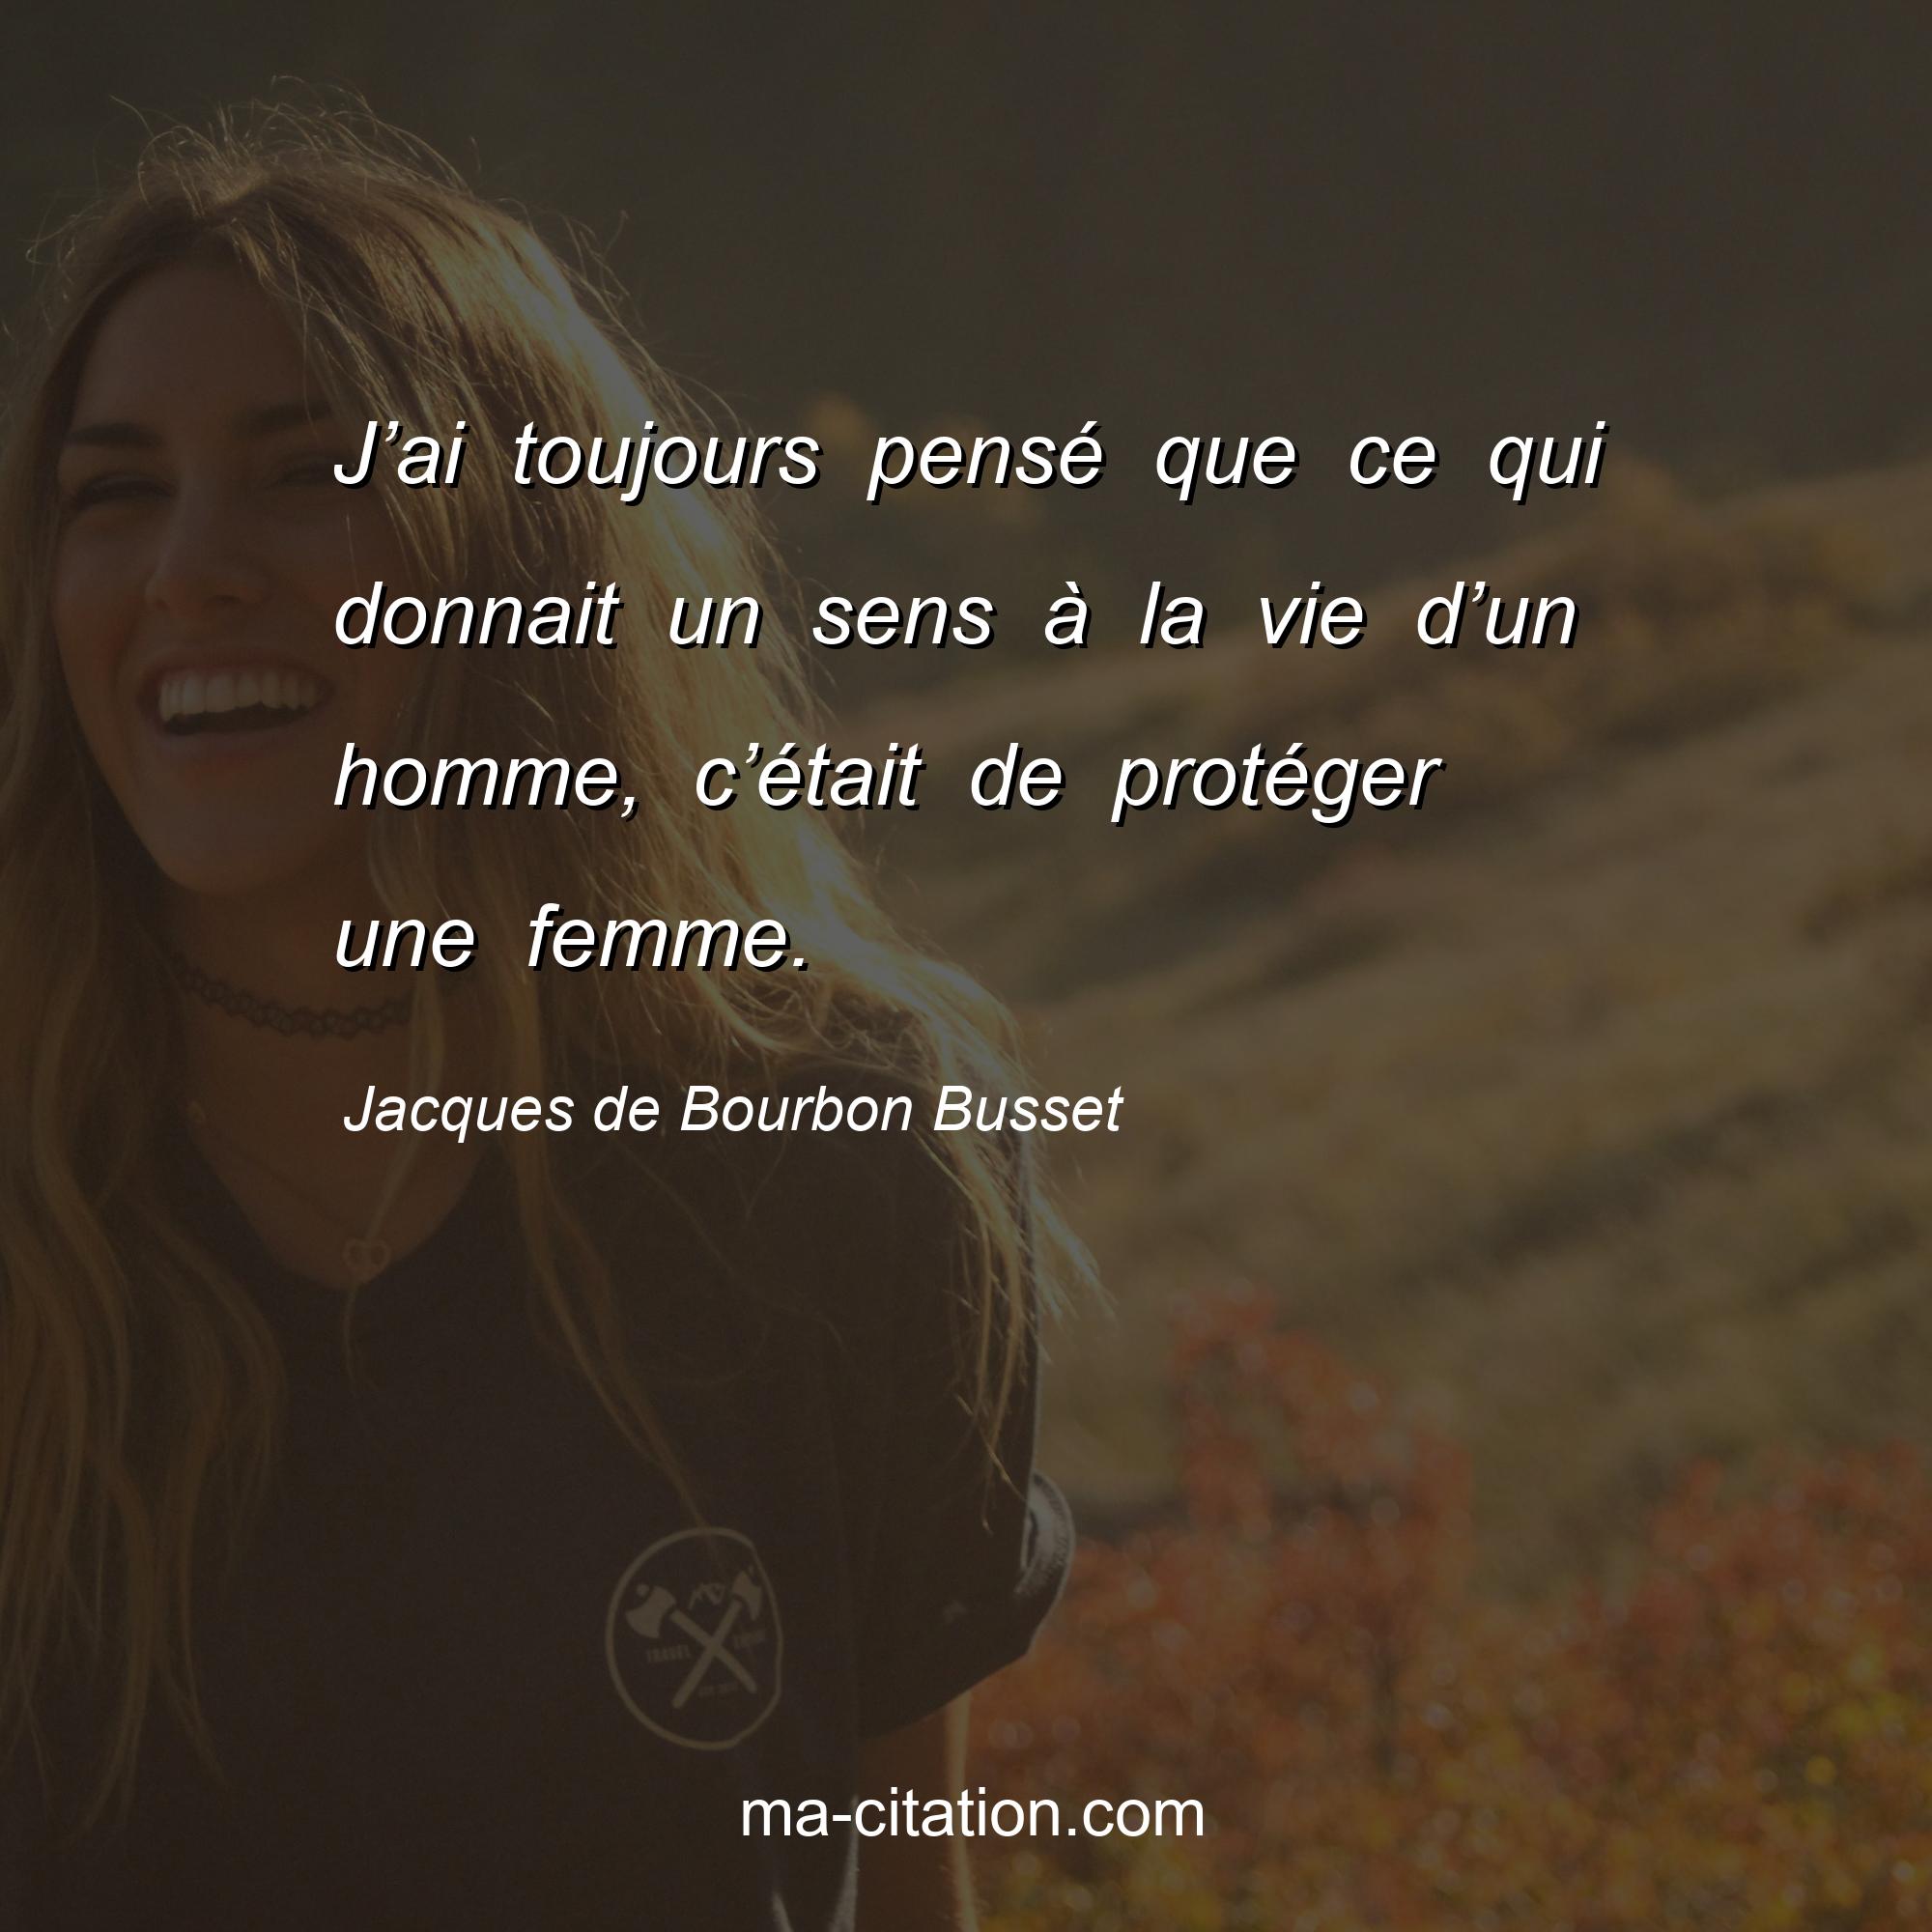 Jacques de Bourbon Busset : J’ai toujours pensé que ce qui donnait un sens à la vie d’un homme, c’était de protéger une femme.